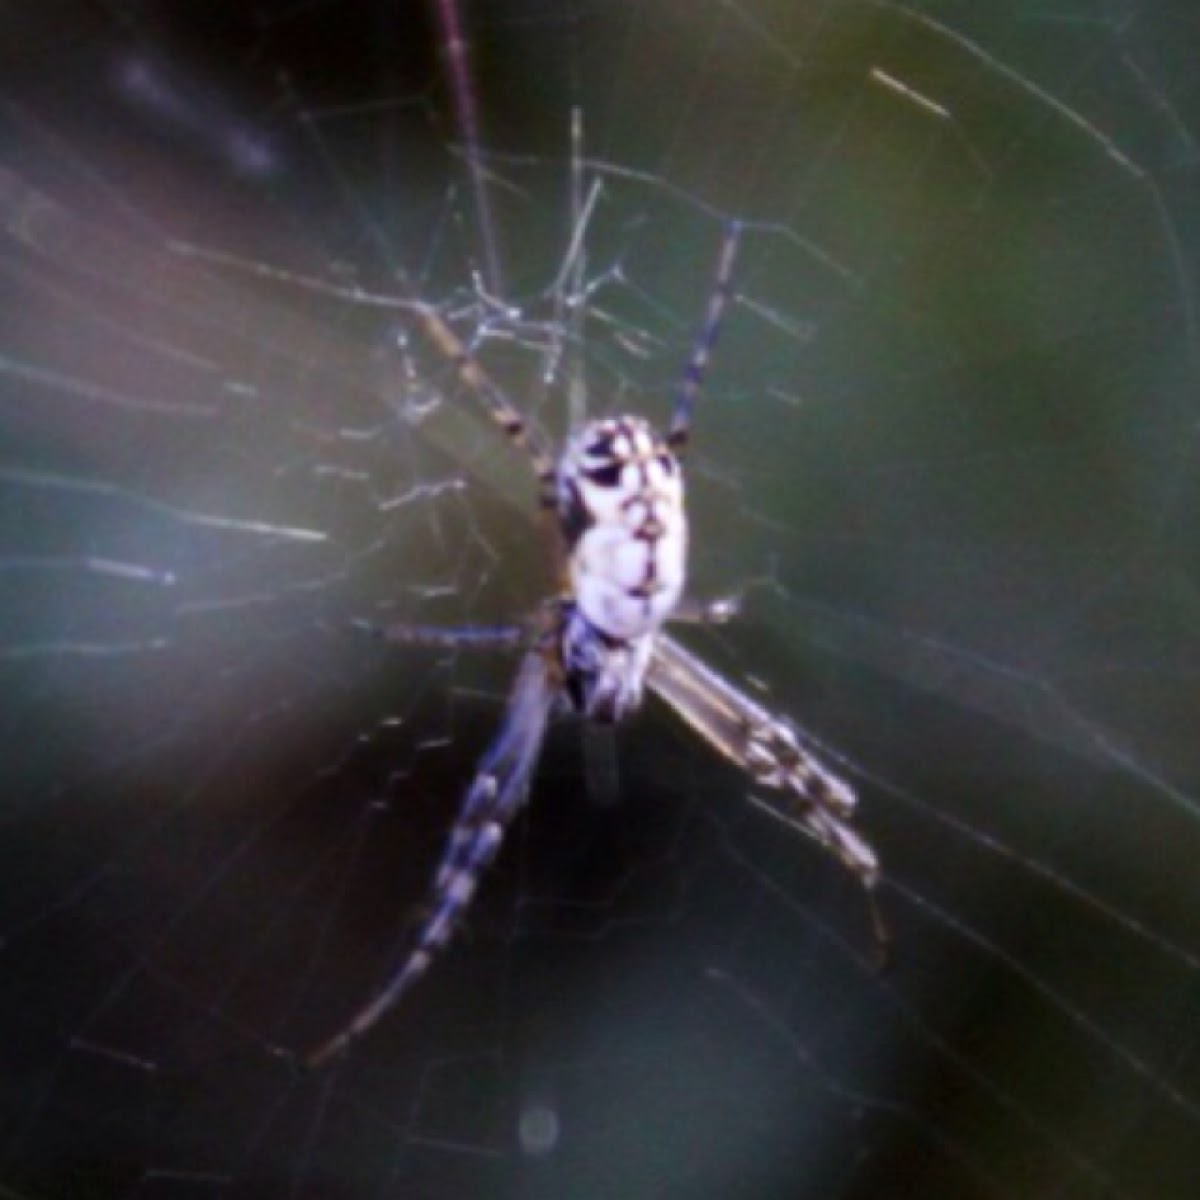 Argiope sp. spider